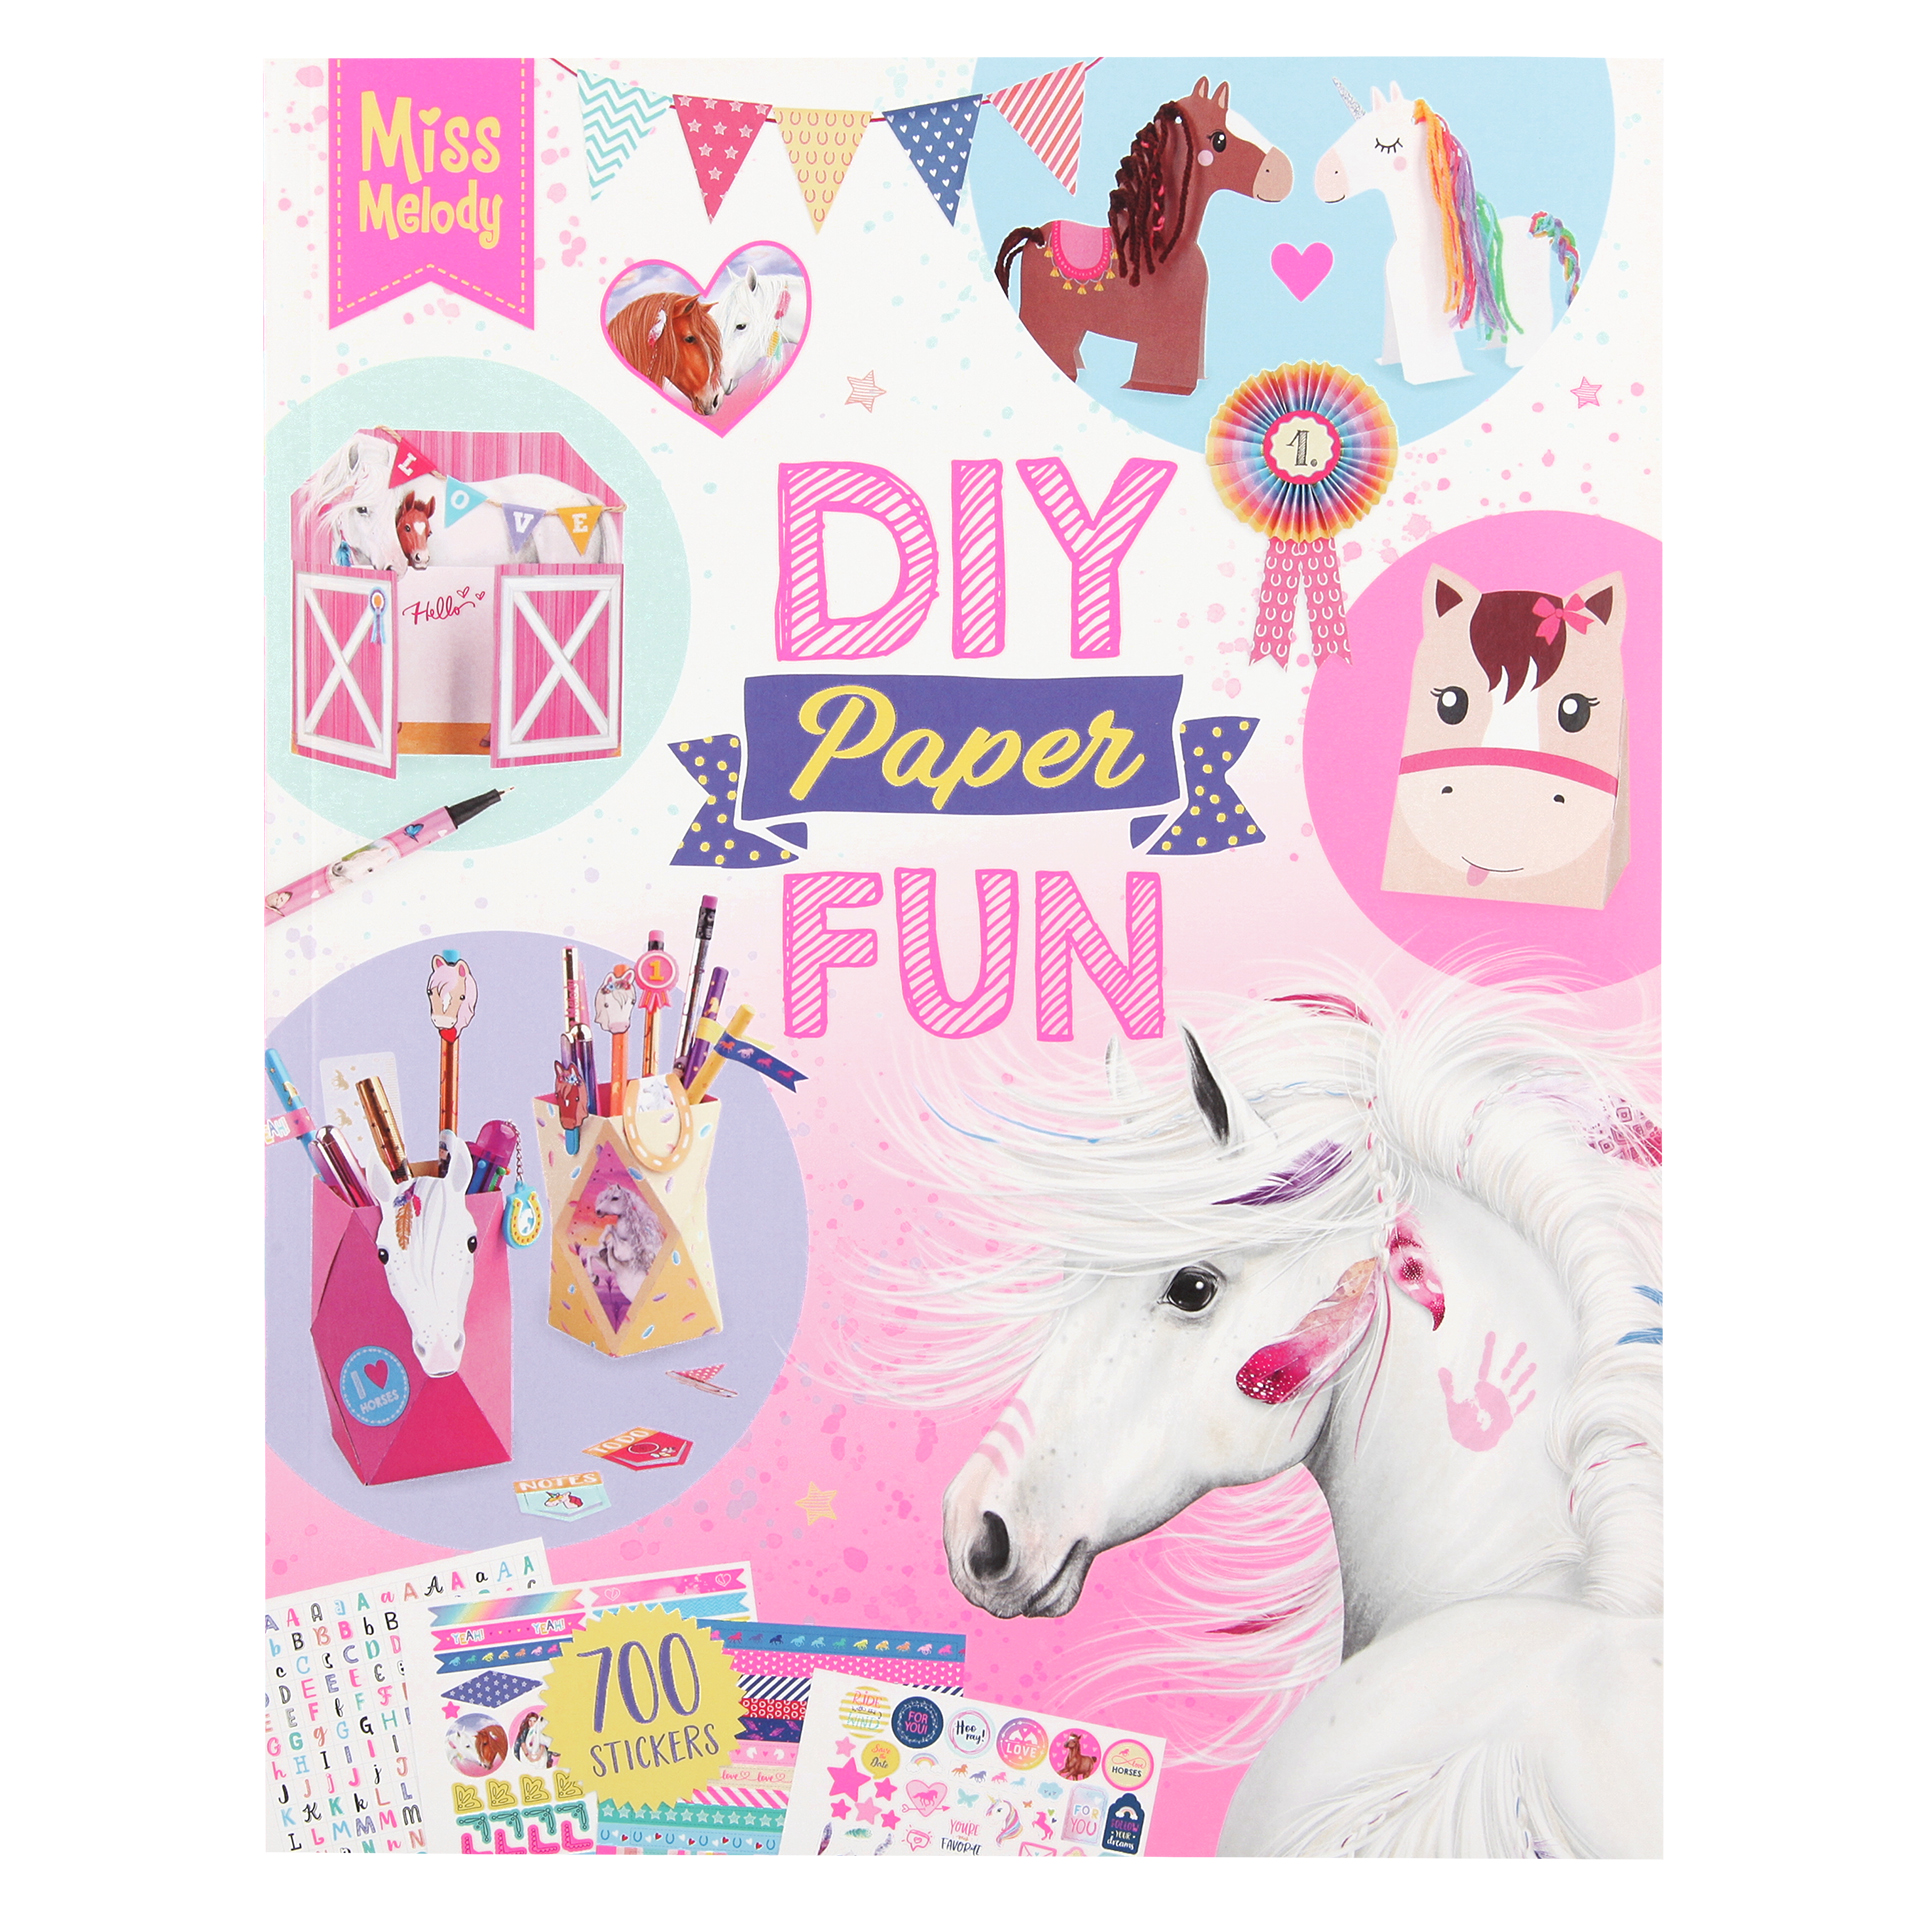 Depesche Top Model DIY Paper Fun Book